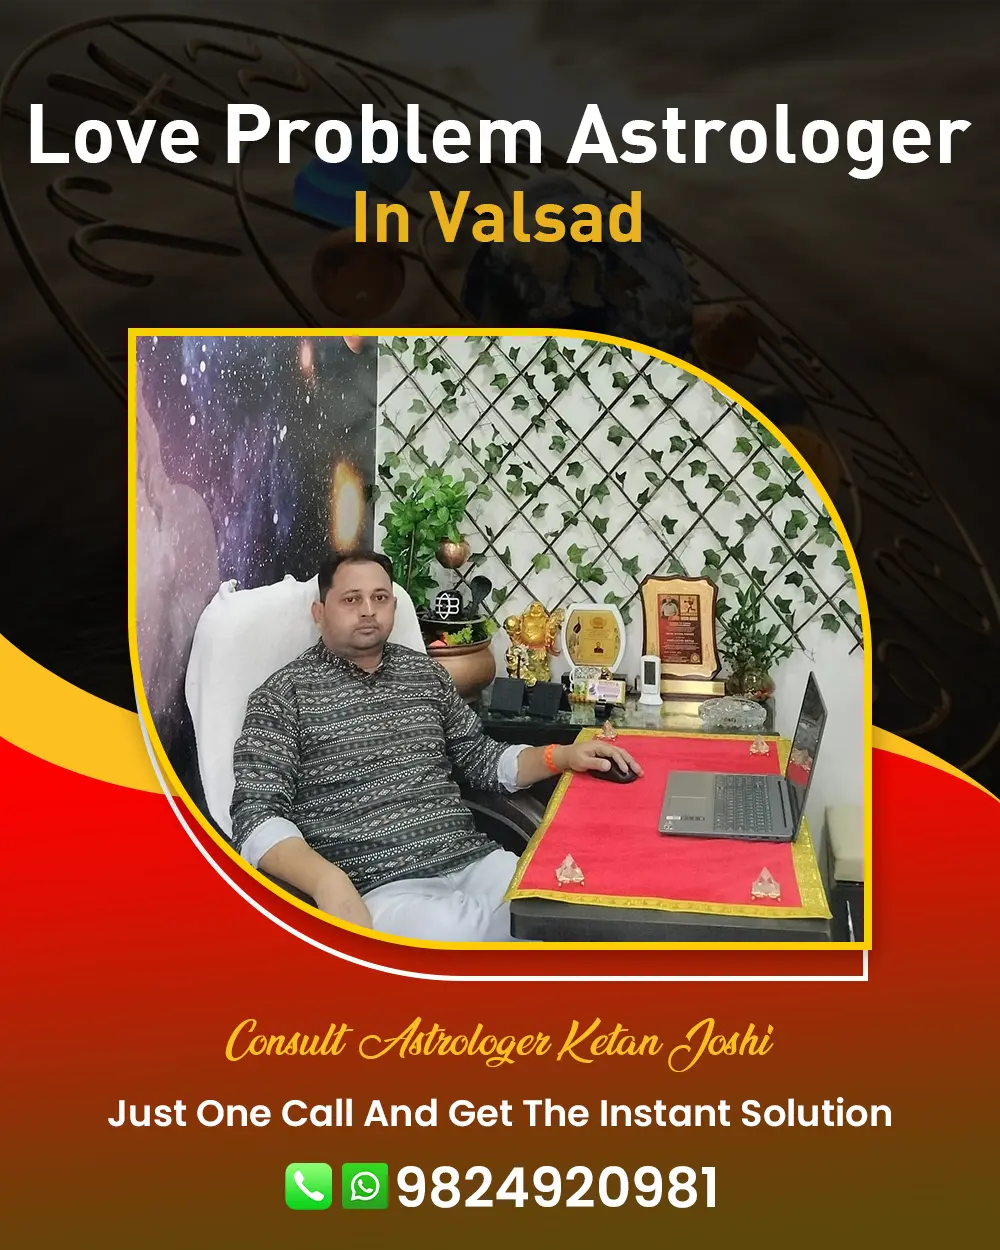 Love Problem Astrologer In Valsad